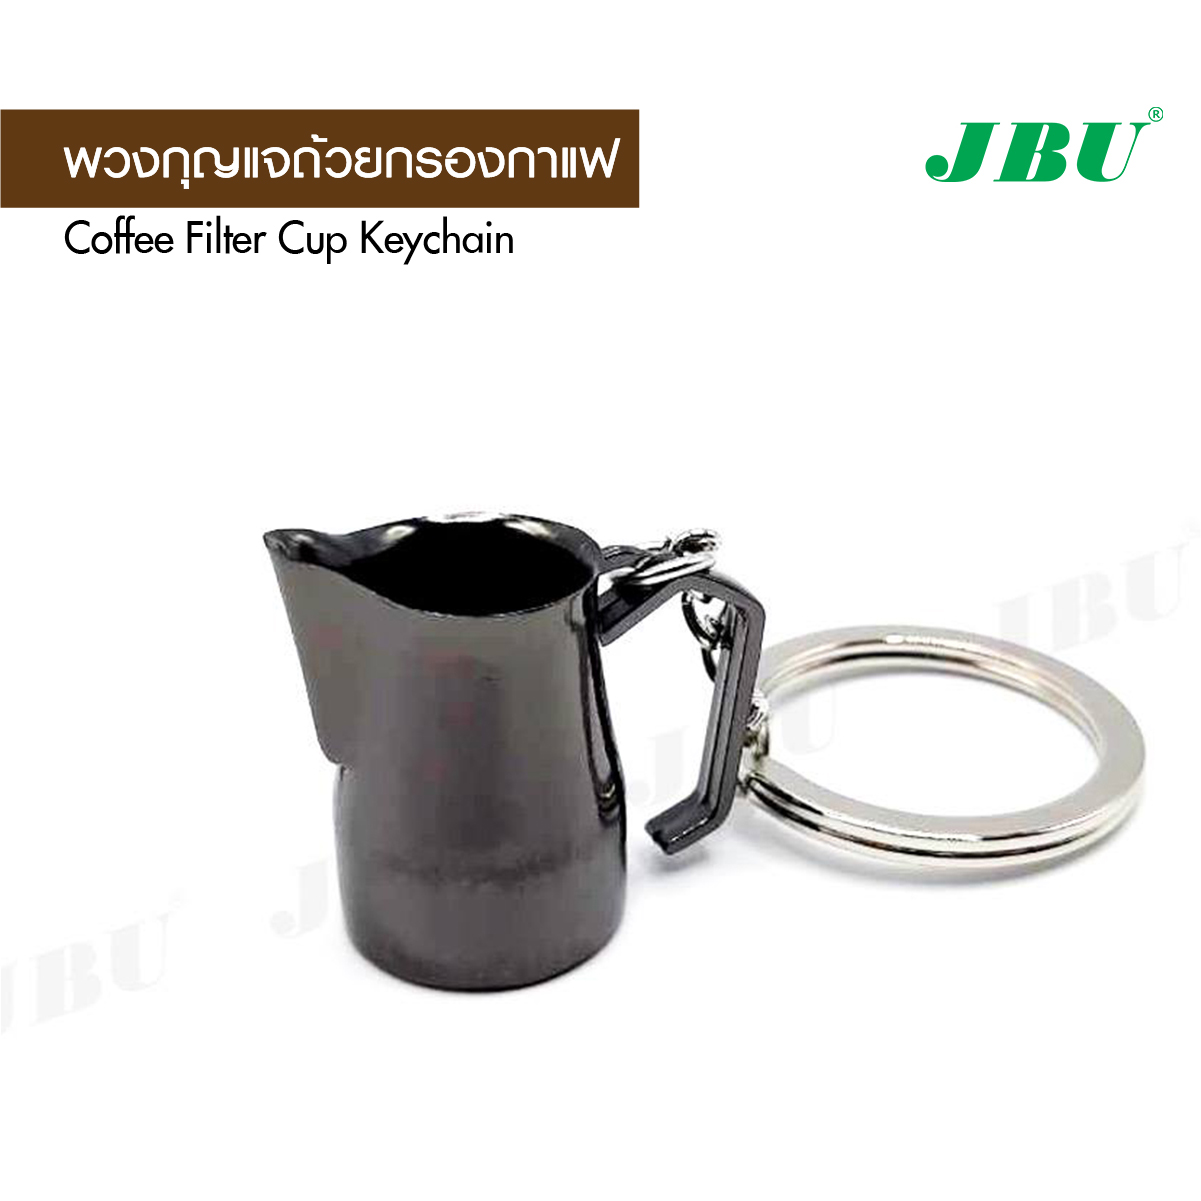 พวงกุญแจ สไตล์วินเทจ ดีไซด์ตามอุปกรณ์ชงกาแฟ พวงกุญแจถ้วยกรองกาแฟ (แบบที่ 4)